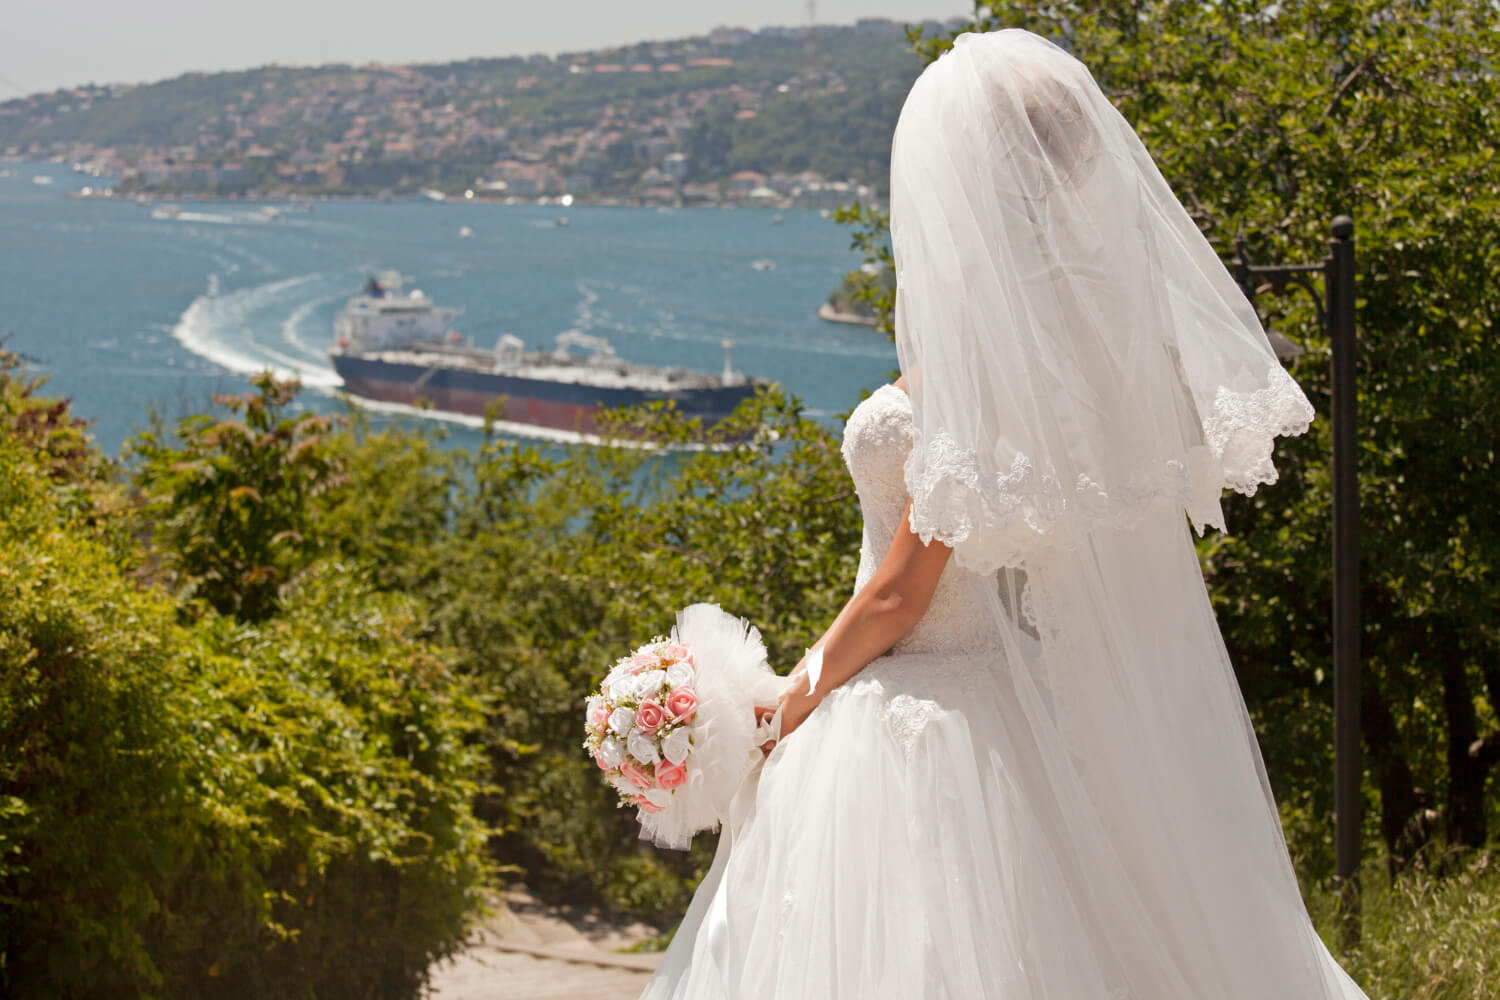 Importanta temei nuntii si a locatiei in alegerea unei rochii de mireasa